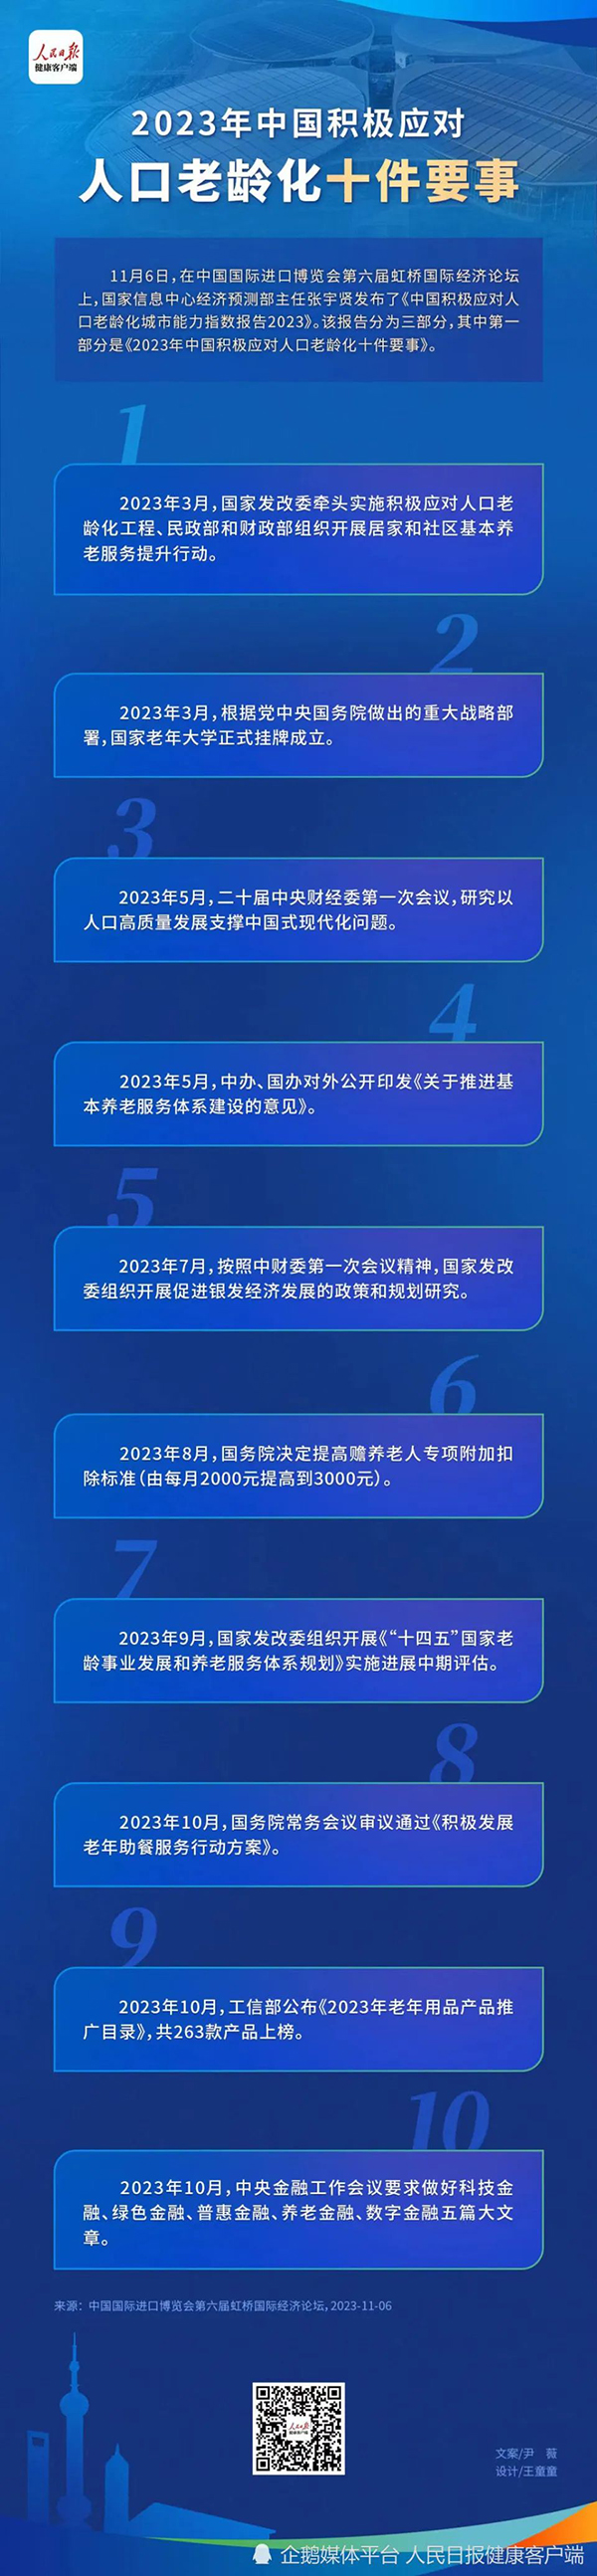 《2023年中国积极应对人口老龄化十件要事》发布-西安老博会为您推荐.jpg